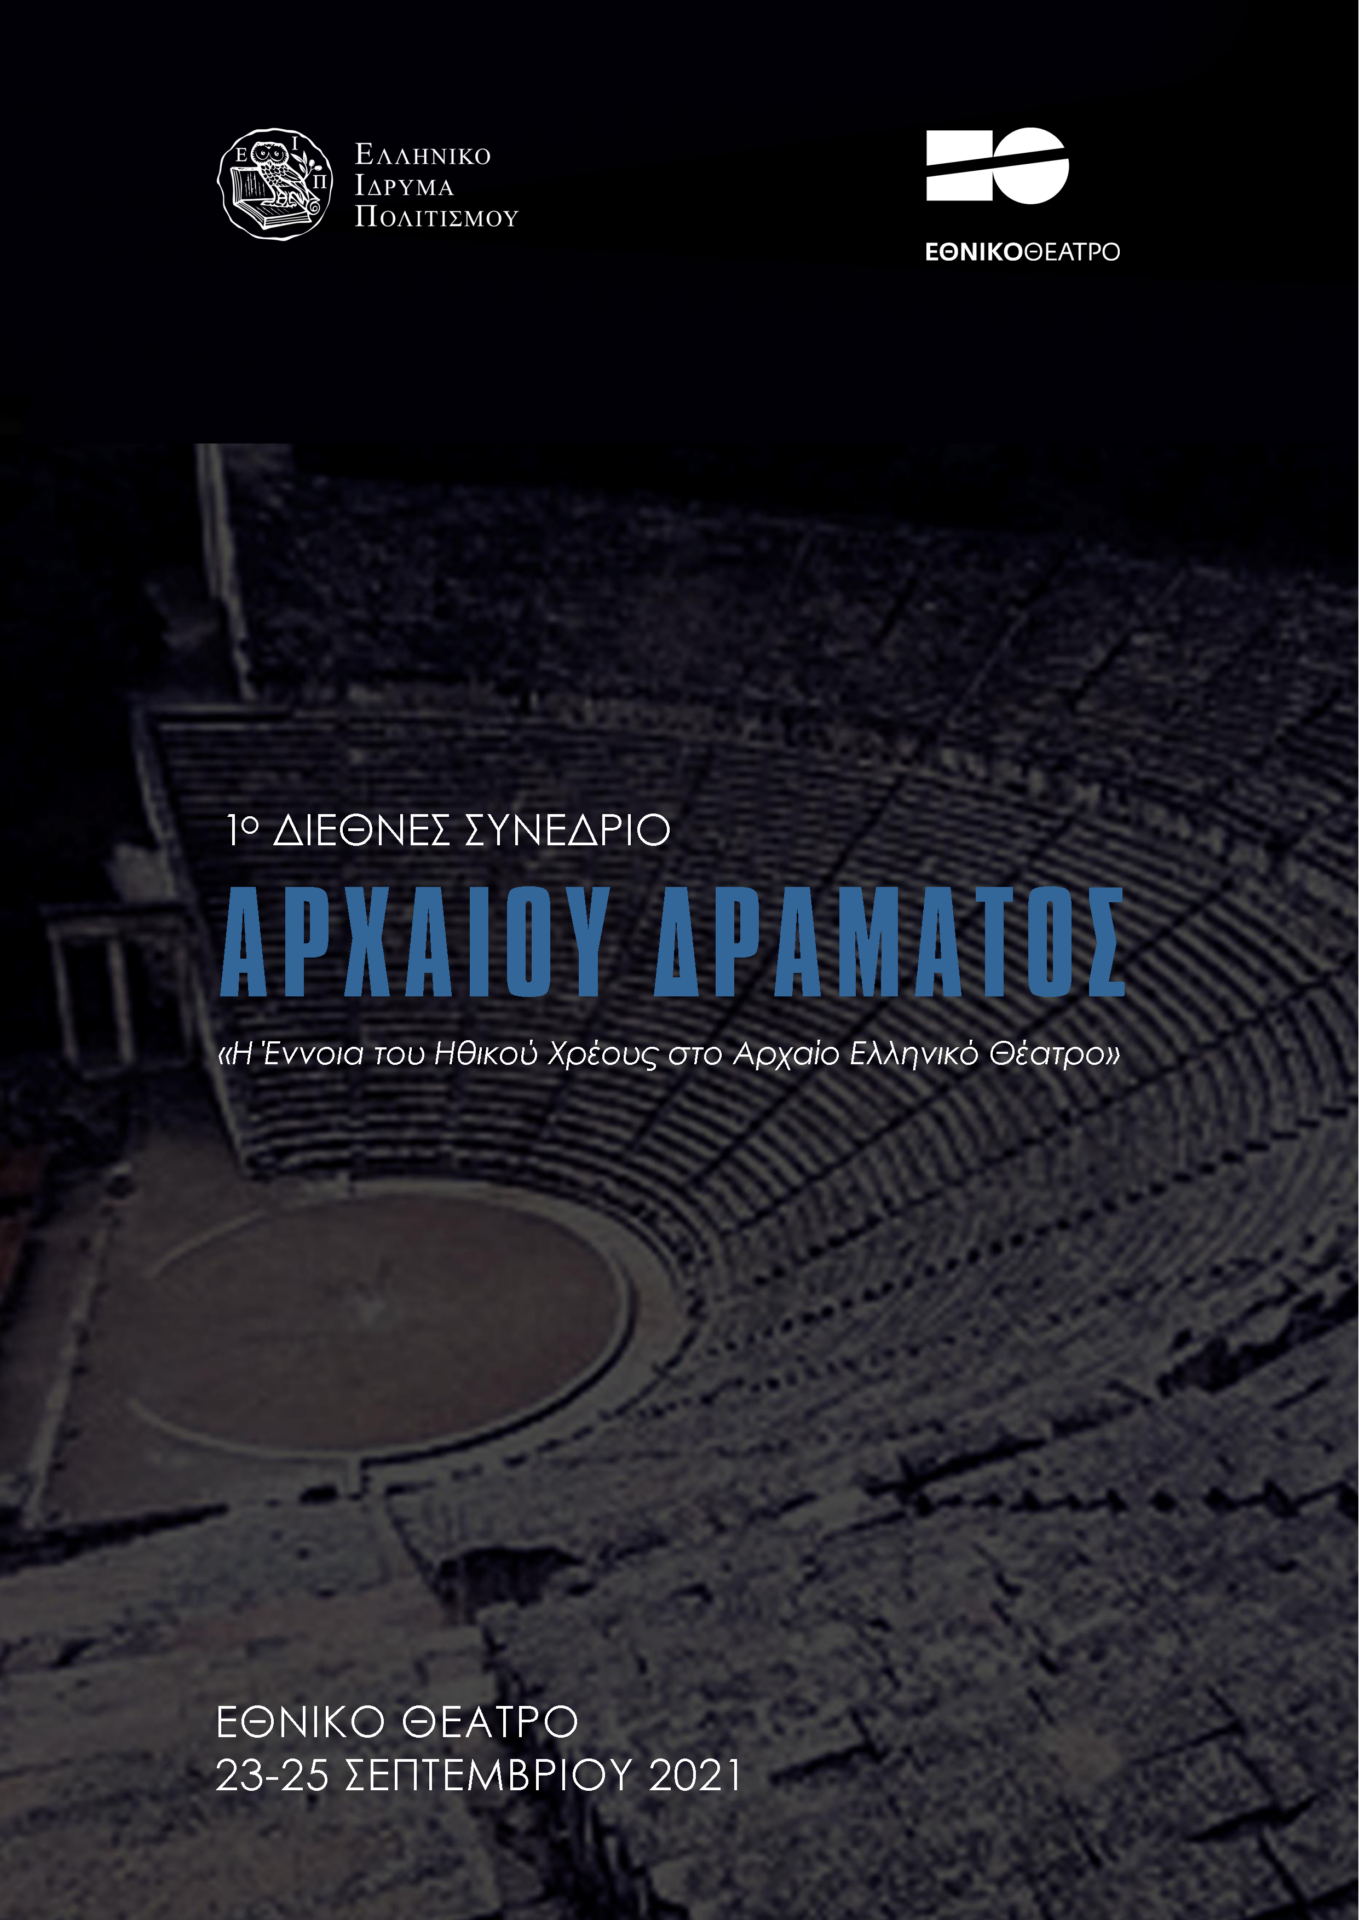 © Ελληνικό Ίδρυμα Πολιτισμού